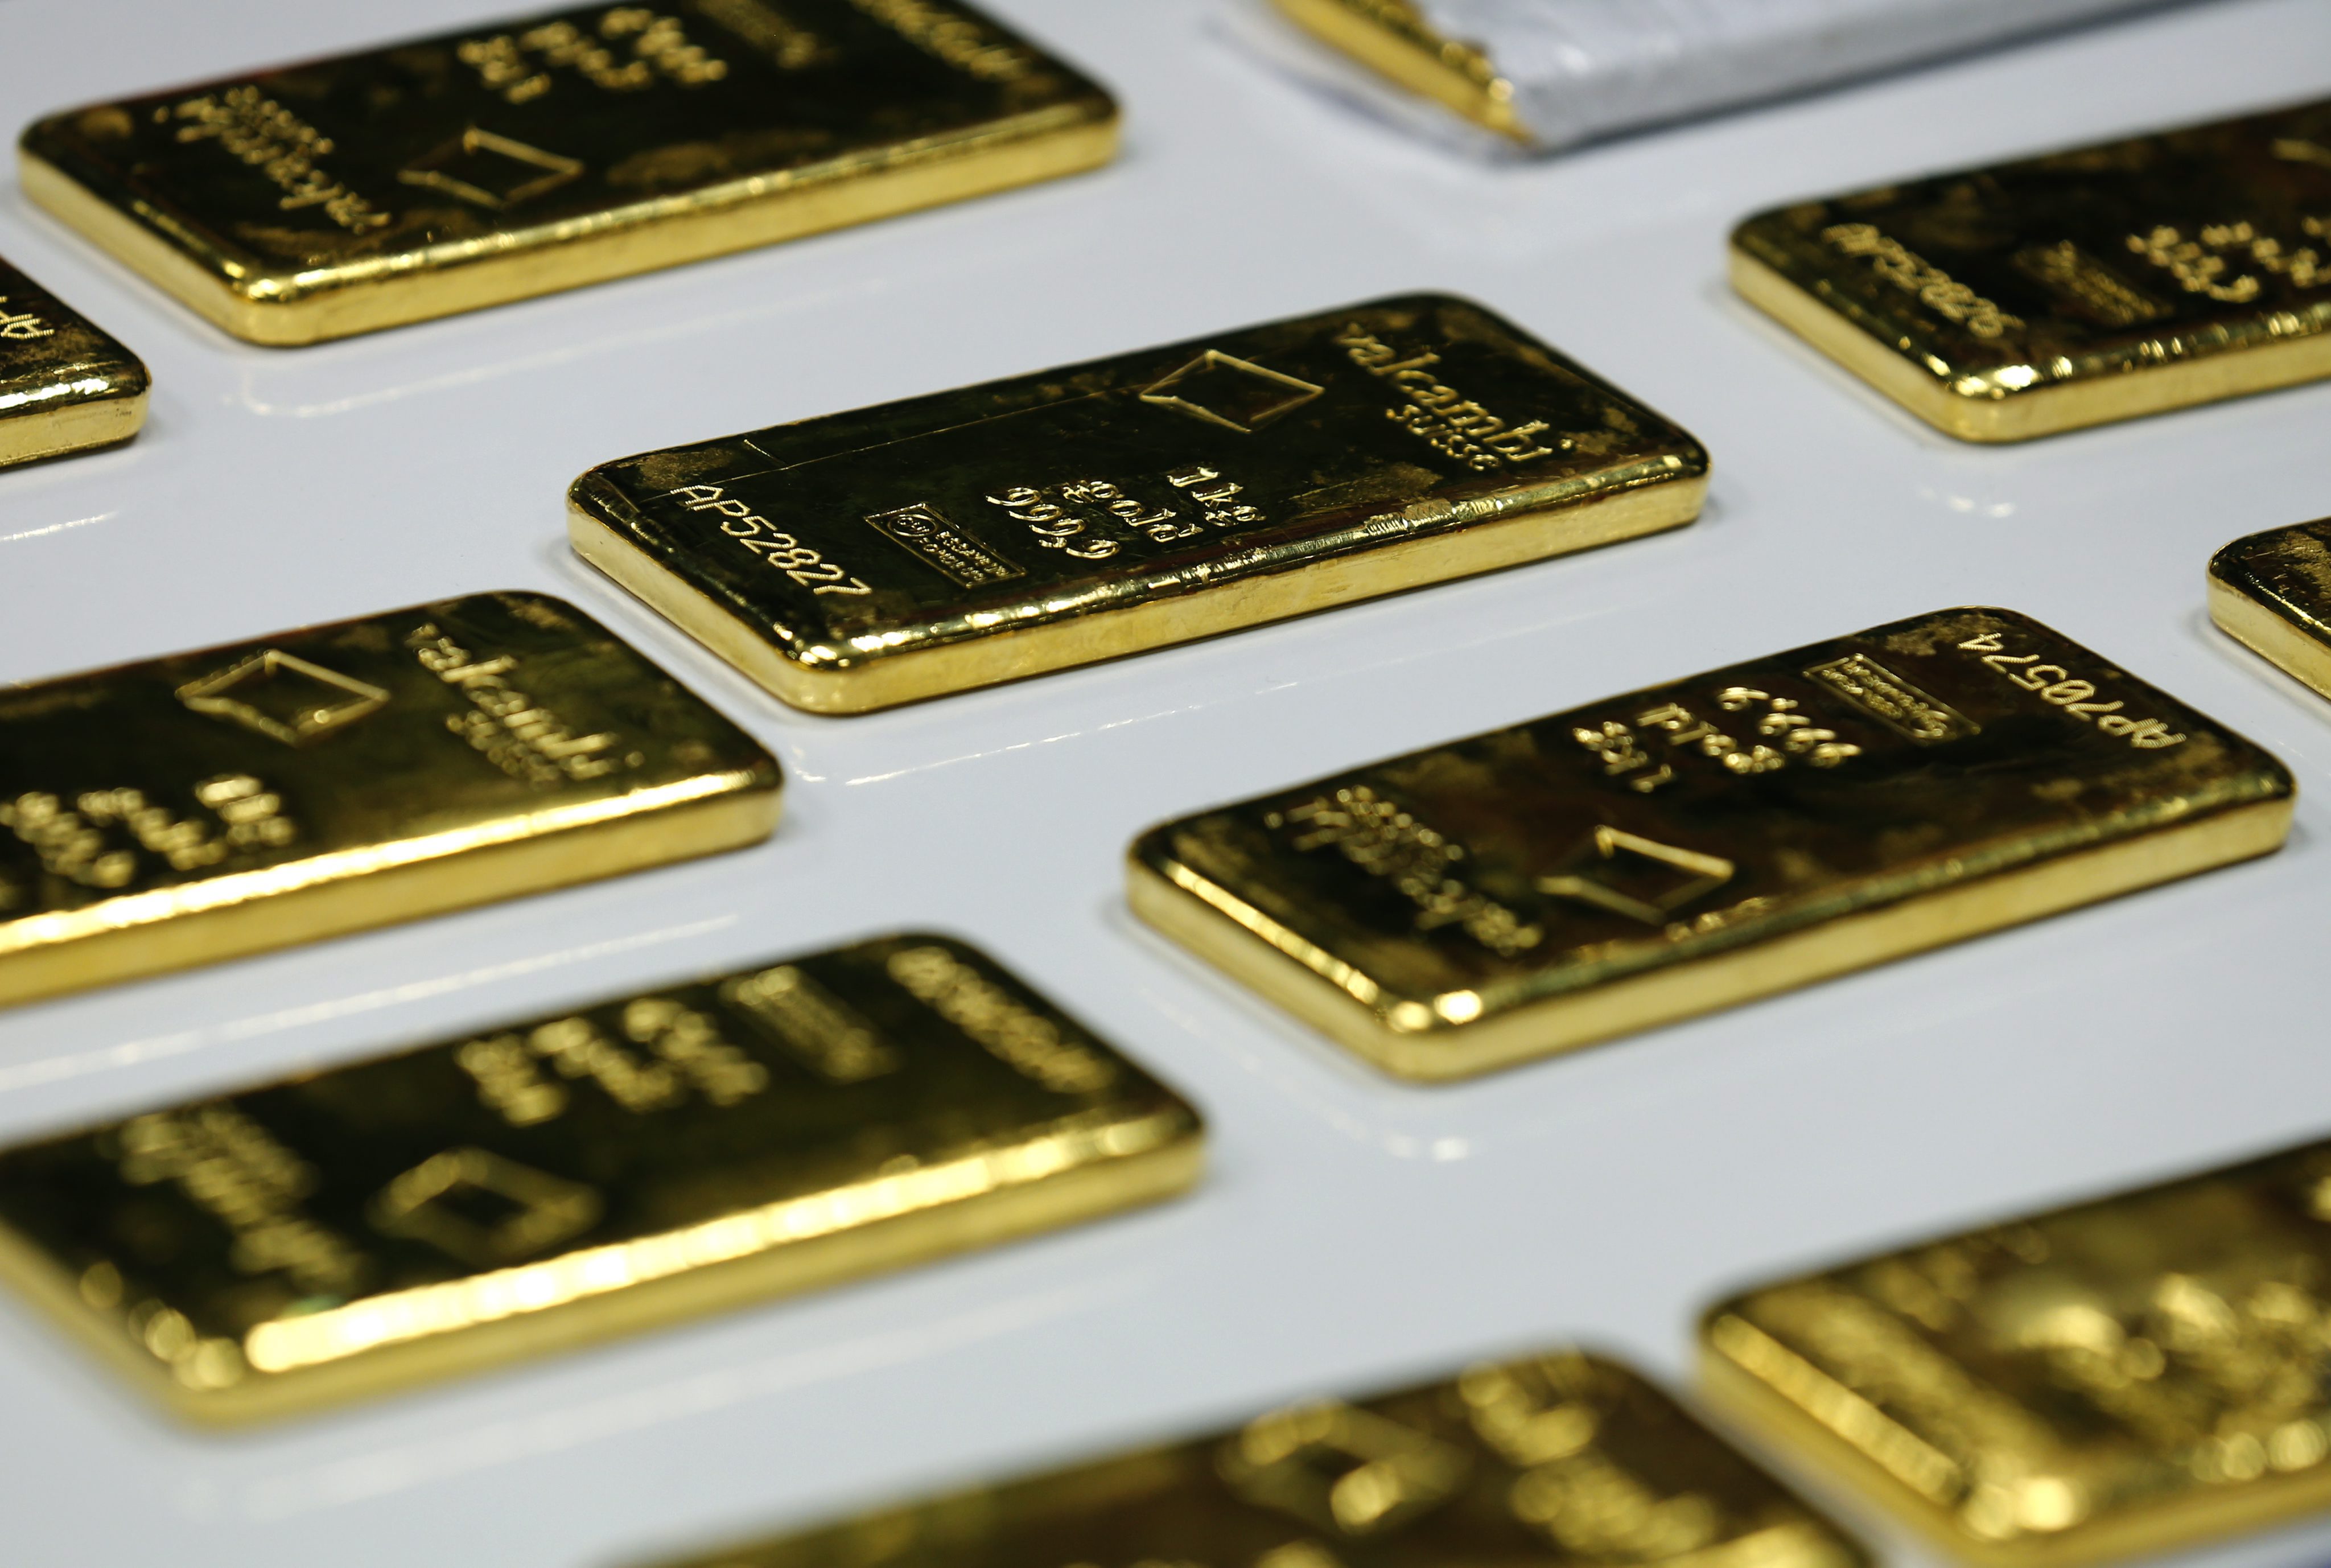 Българи масово са купували злато през юни